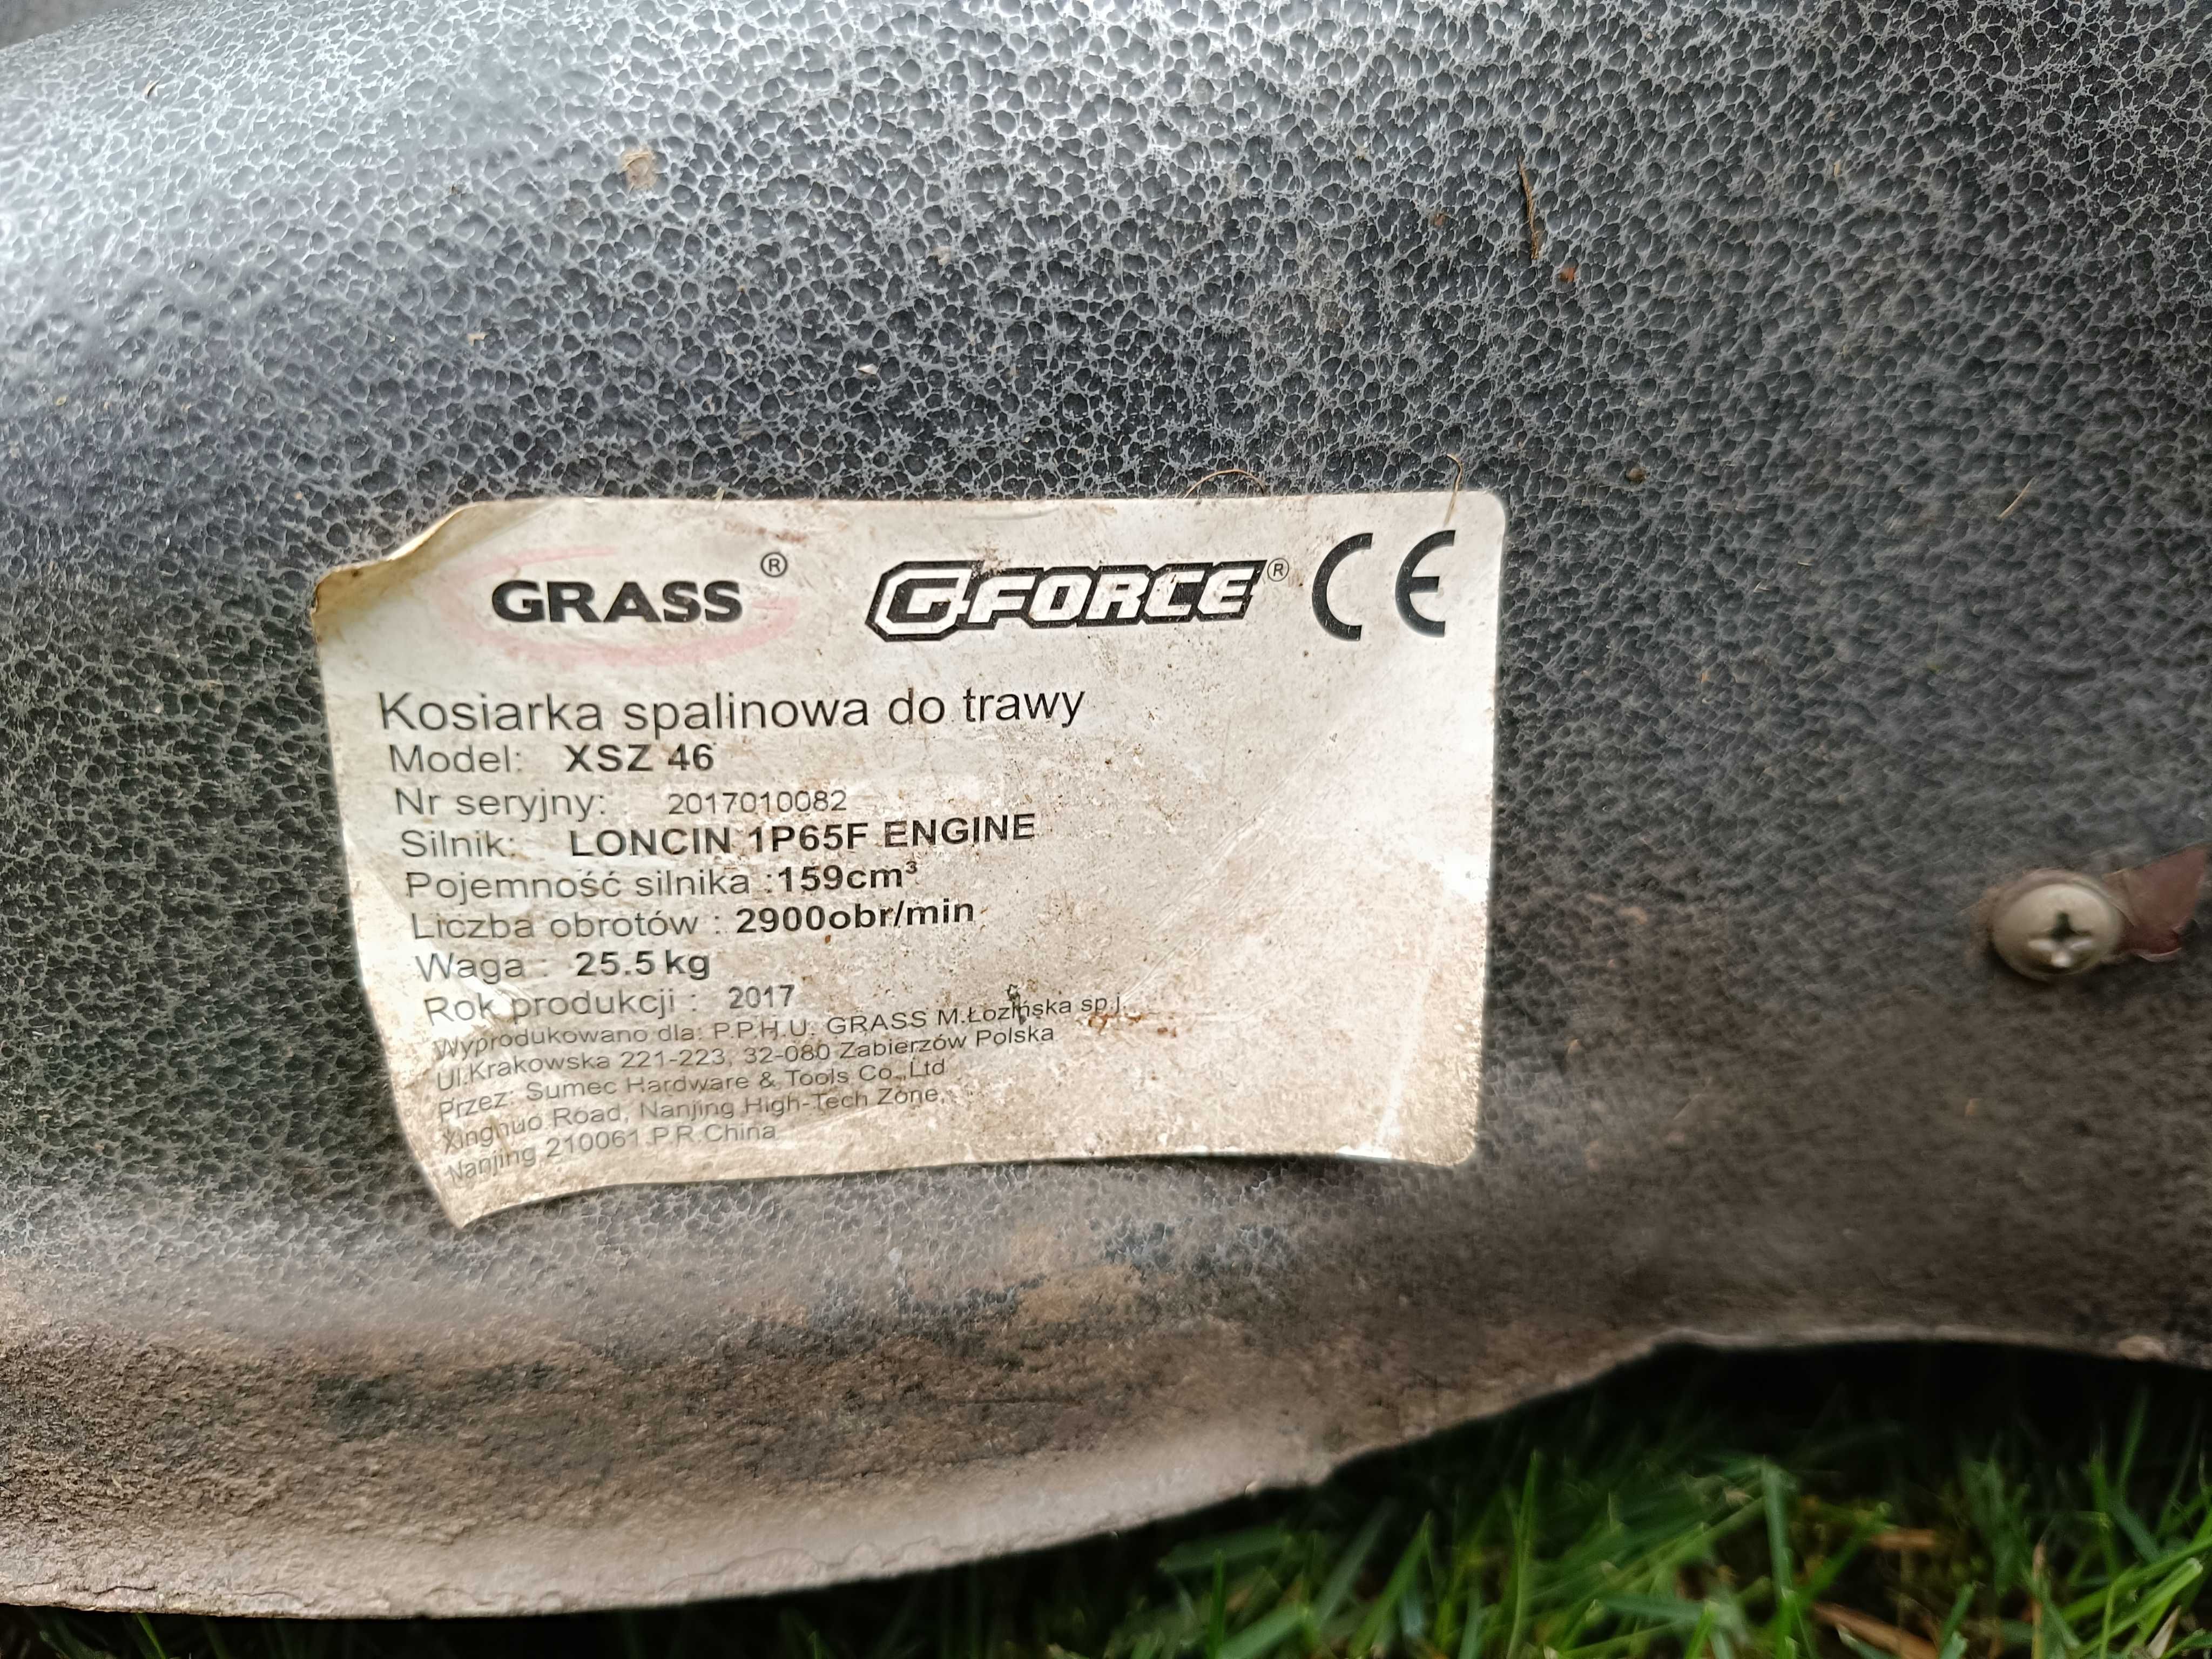 Kosiarka spalinowa do trawy z napędem GRASS GFORCE XSZ 46